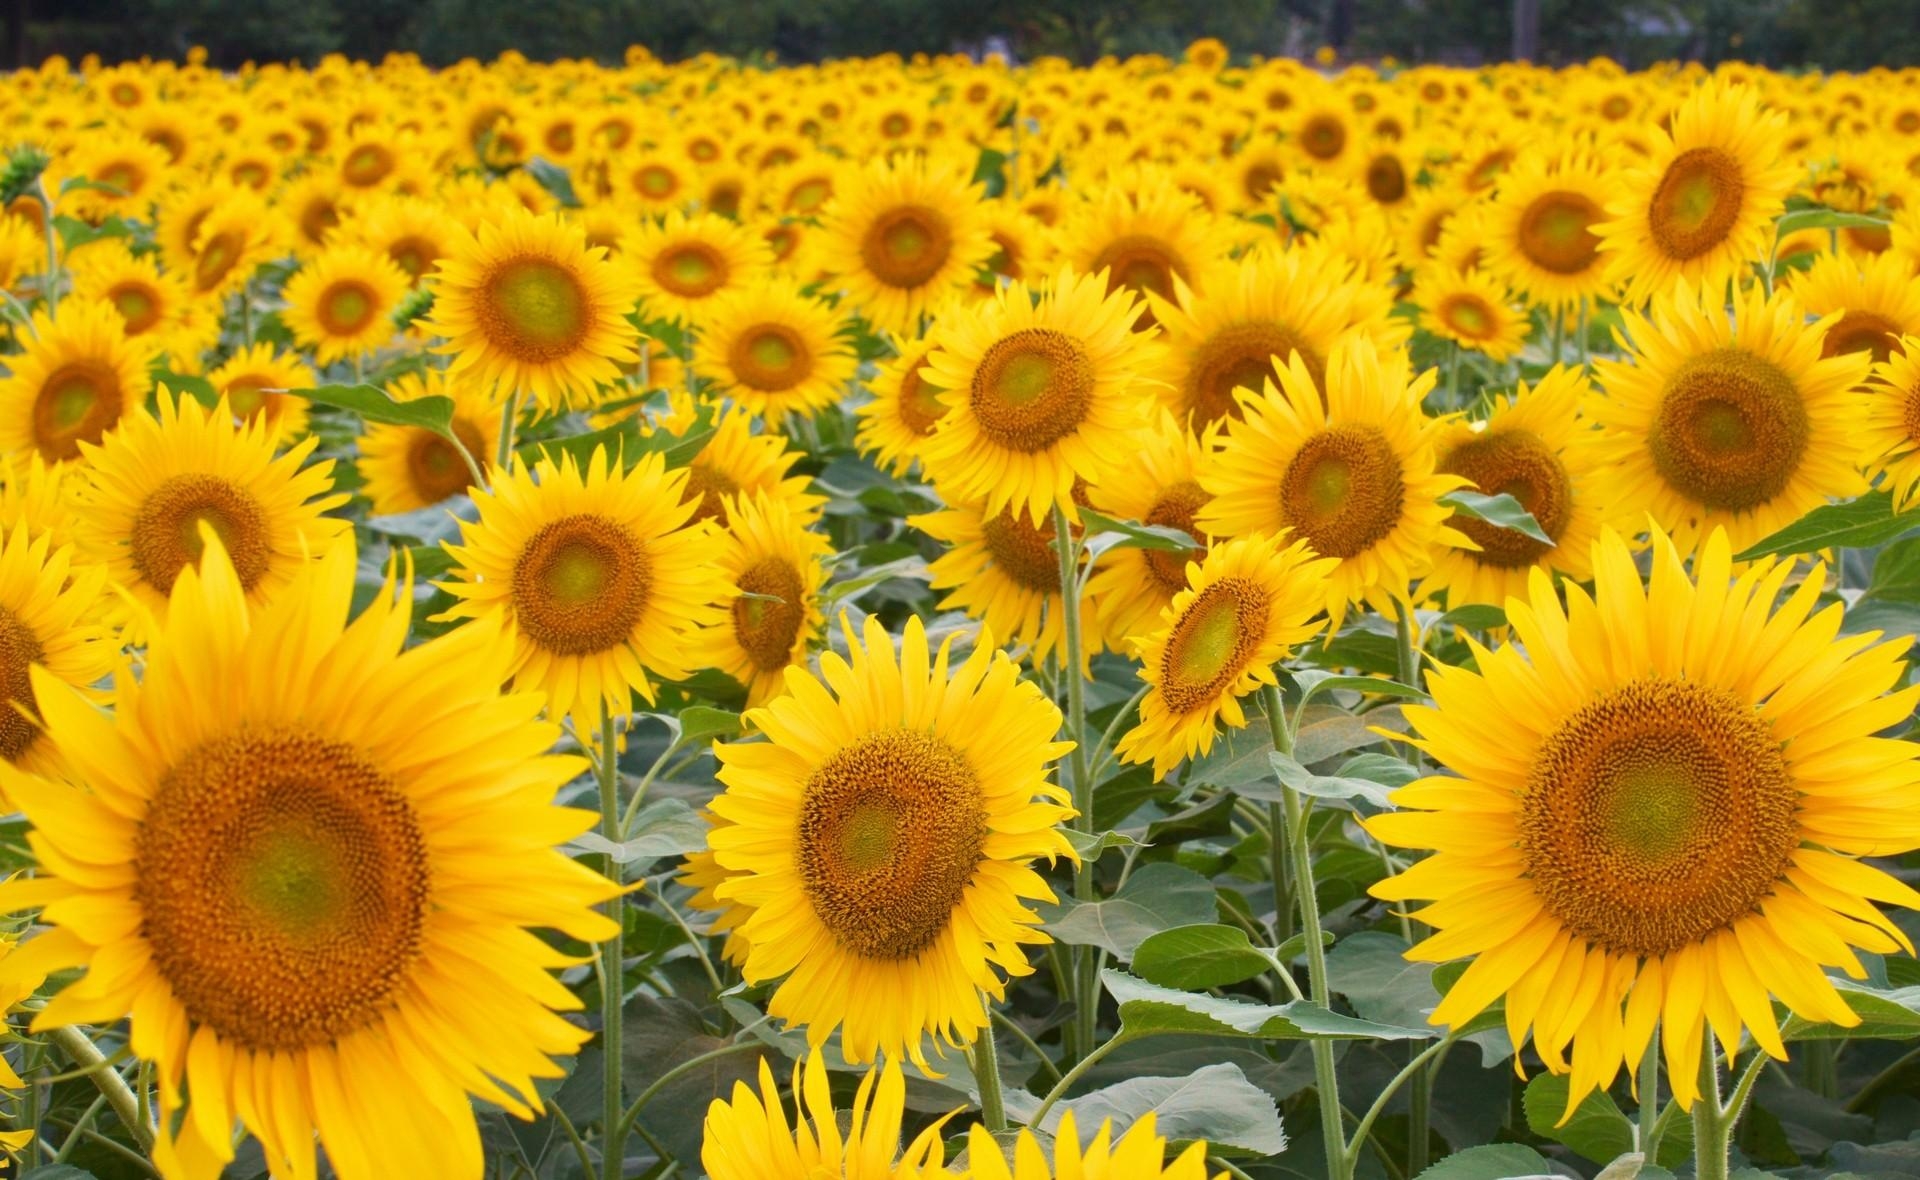 sunflowers, flowers, field, lot, hats